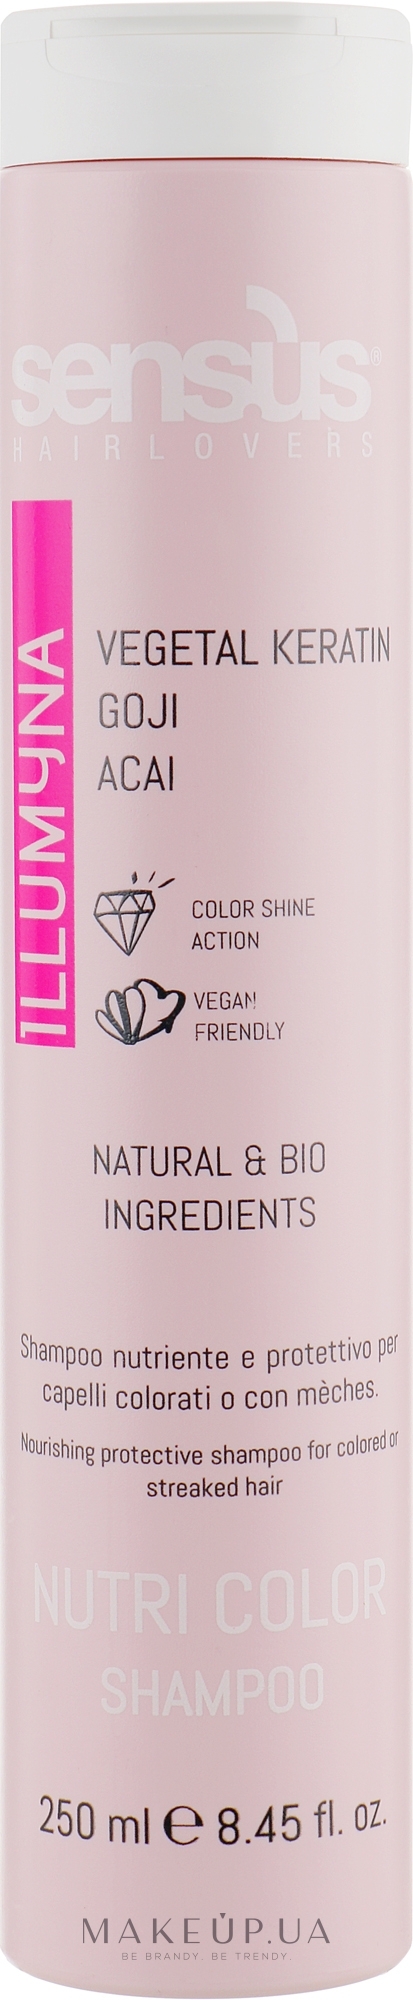 Шампунь для захисту кольору фарбованого й меліруваного волосся - Sensus Nutri Color Shampoo — фото 250ml